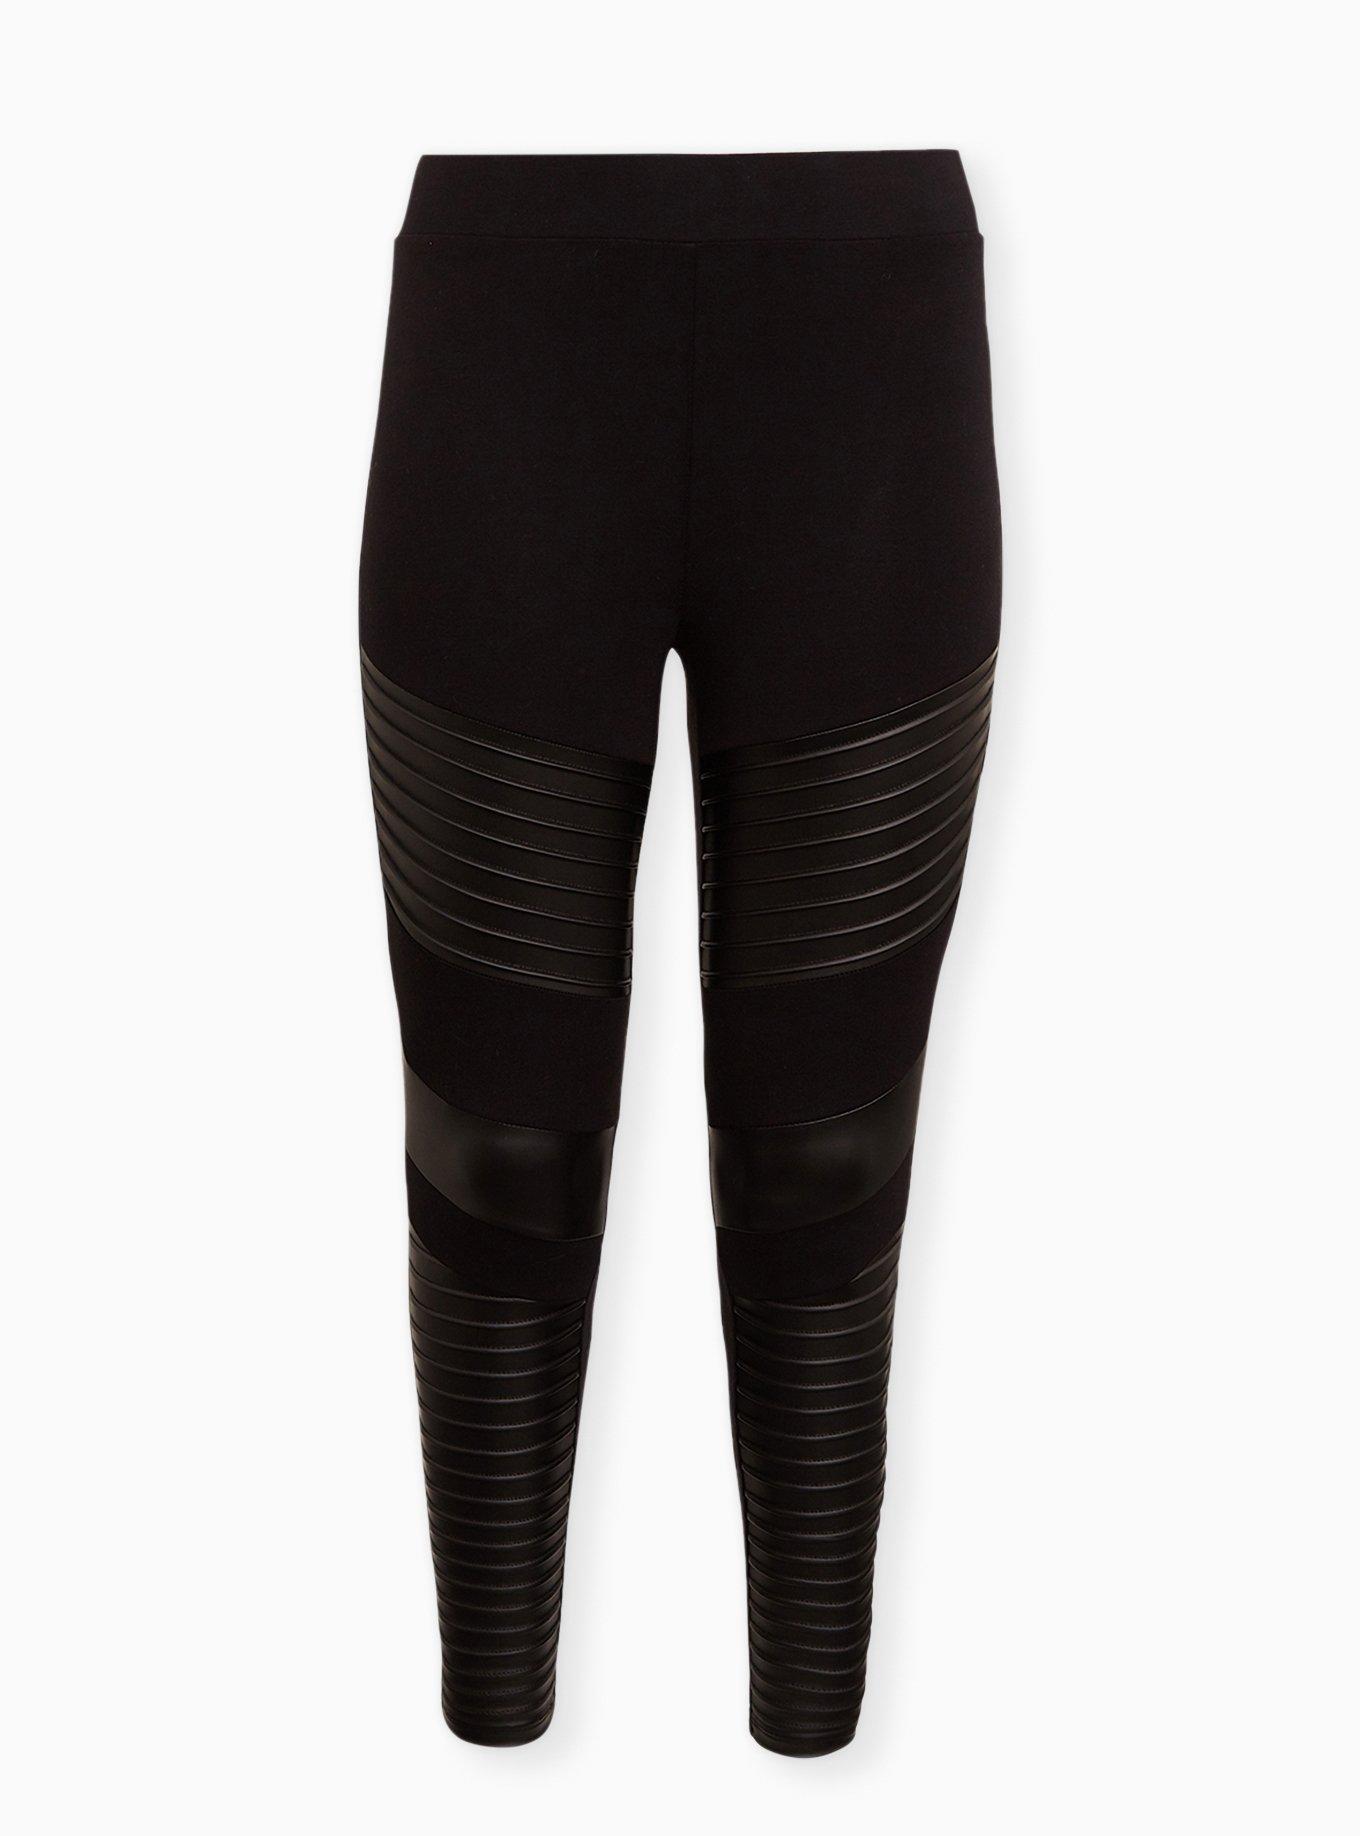 torrid, Pants & Jumpsuits, Torrid Faux Leather Black Leggings Size 2 2x